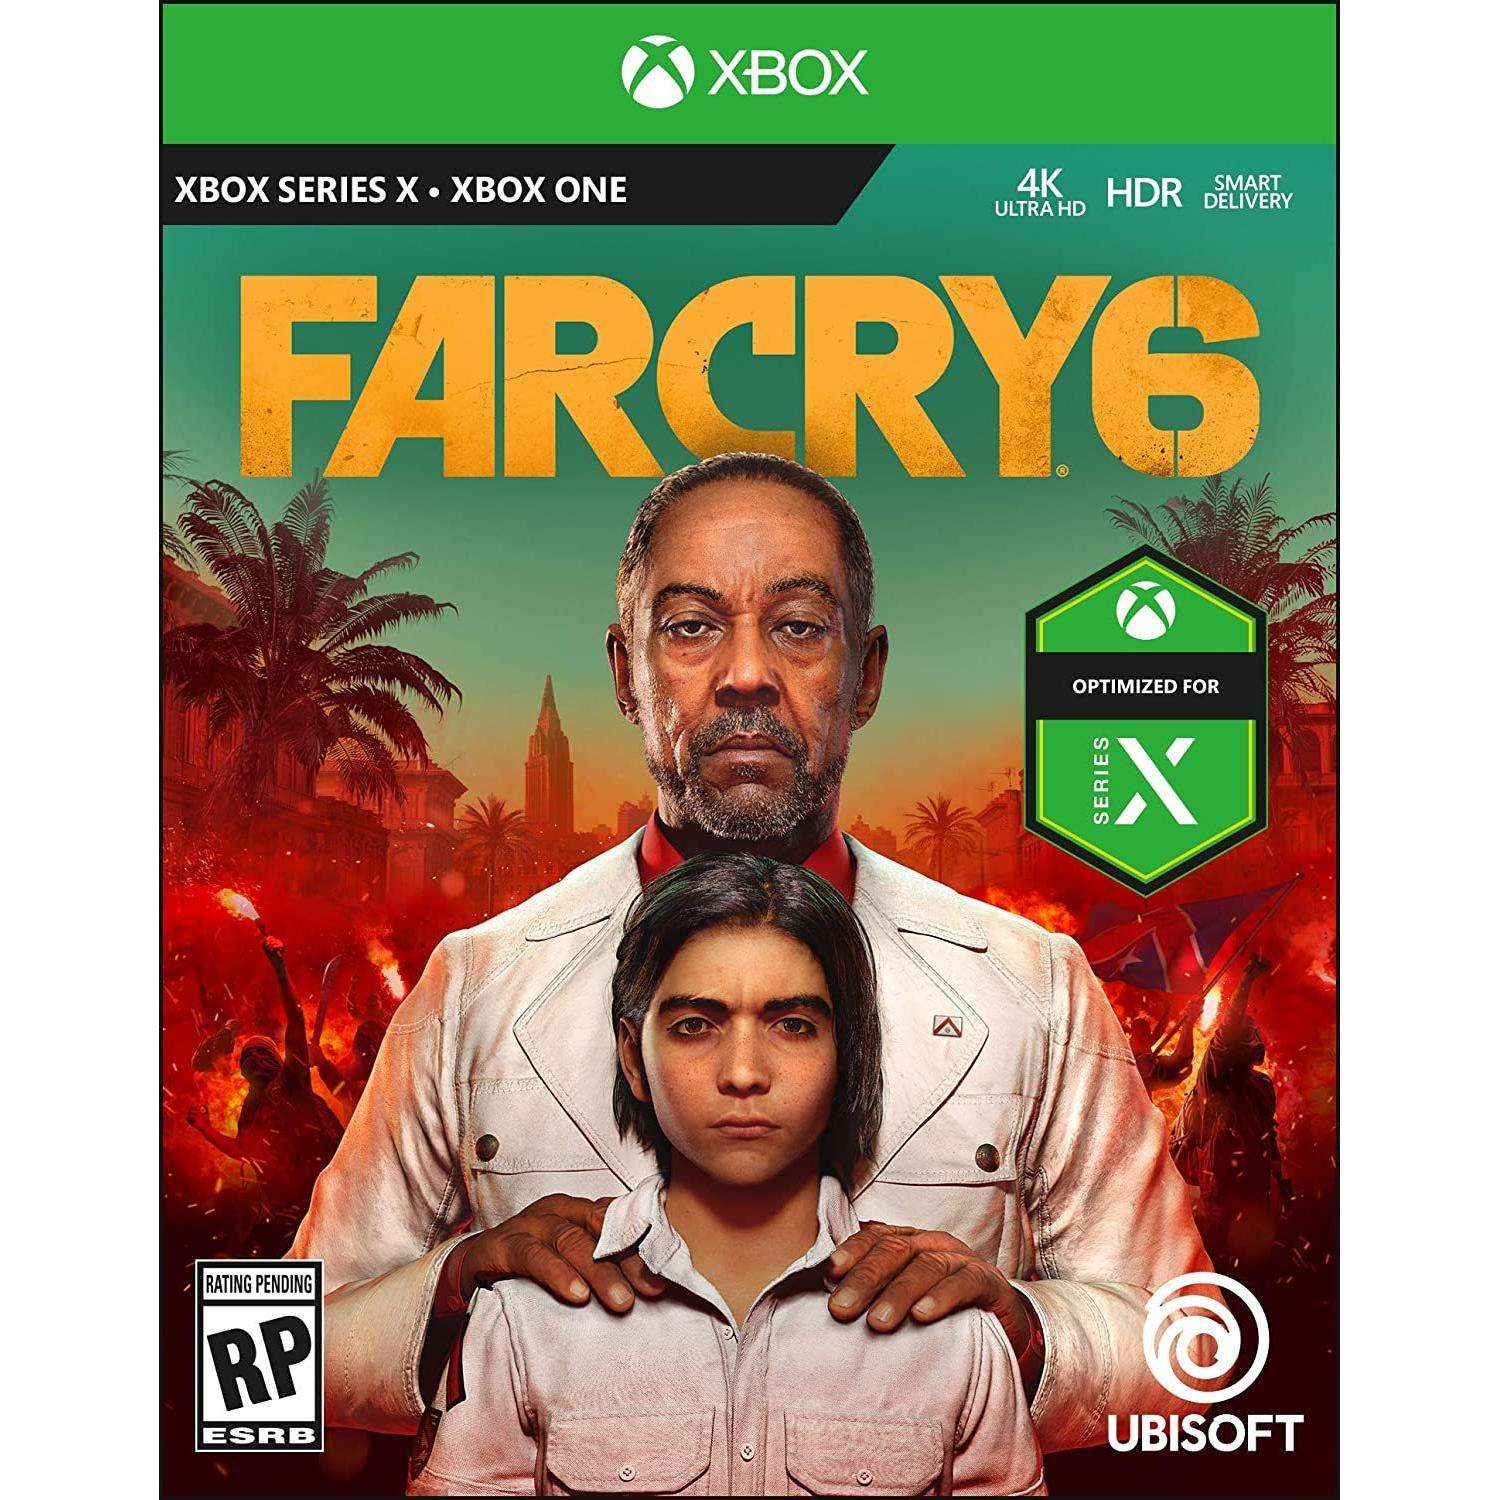 XBOX ONE - Far Cry 6